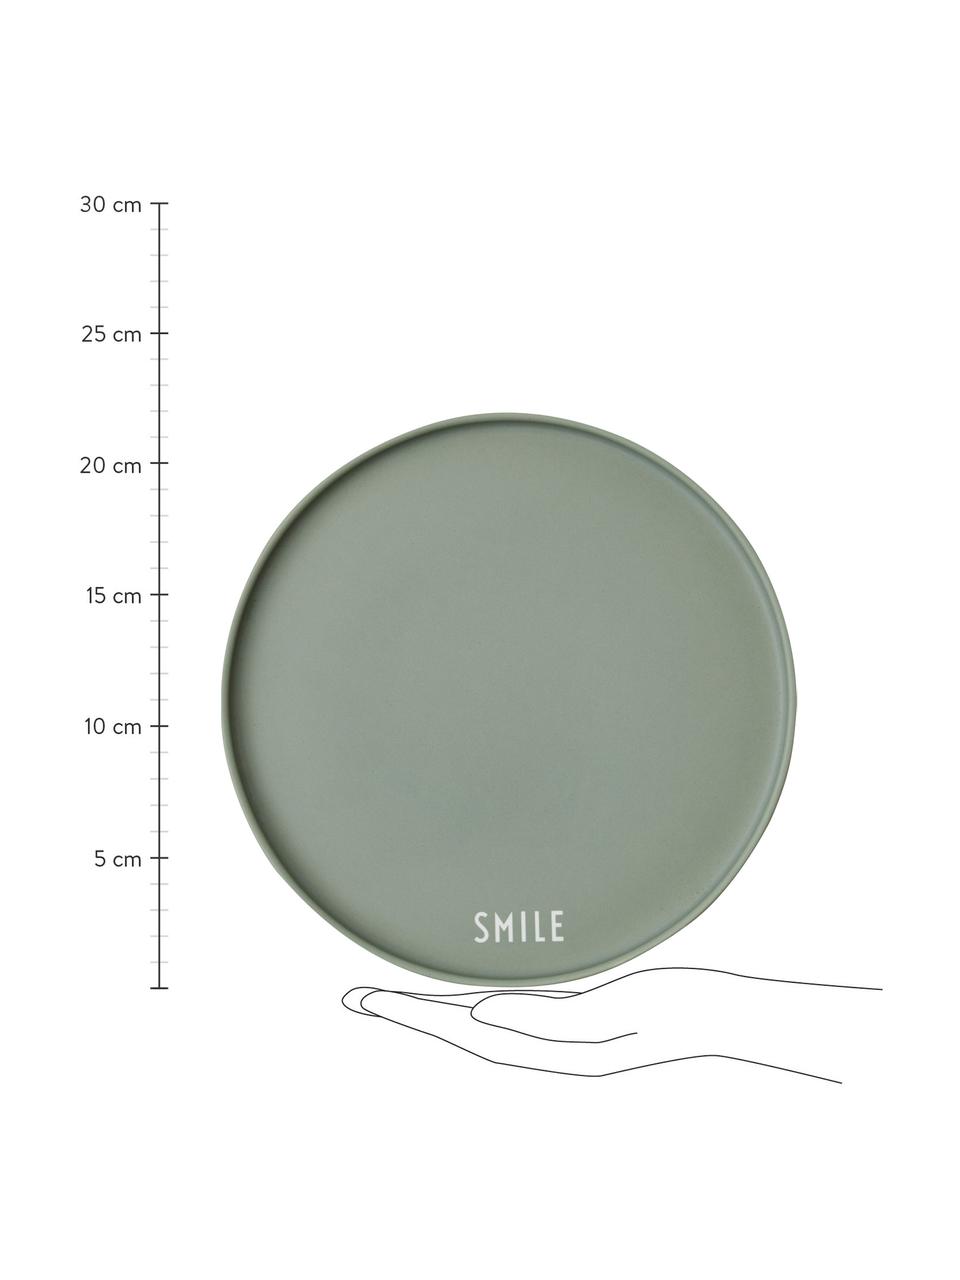 Design bord Favourite SMILE in groen met opschrift, Beenderporselein (porselein)
Fine Bone China is een zacht porselein, dat zich vooral onderscheidt door zijn briljante, doorschijnende glans., Groen, wit, Ø 22 cm